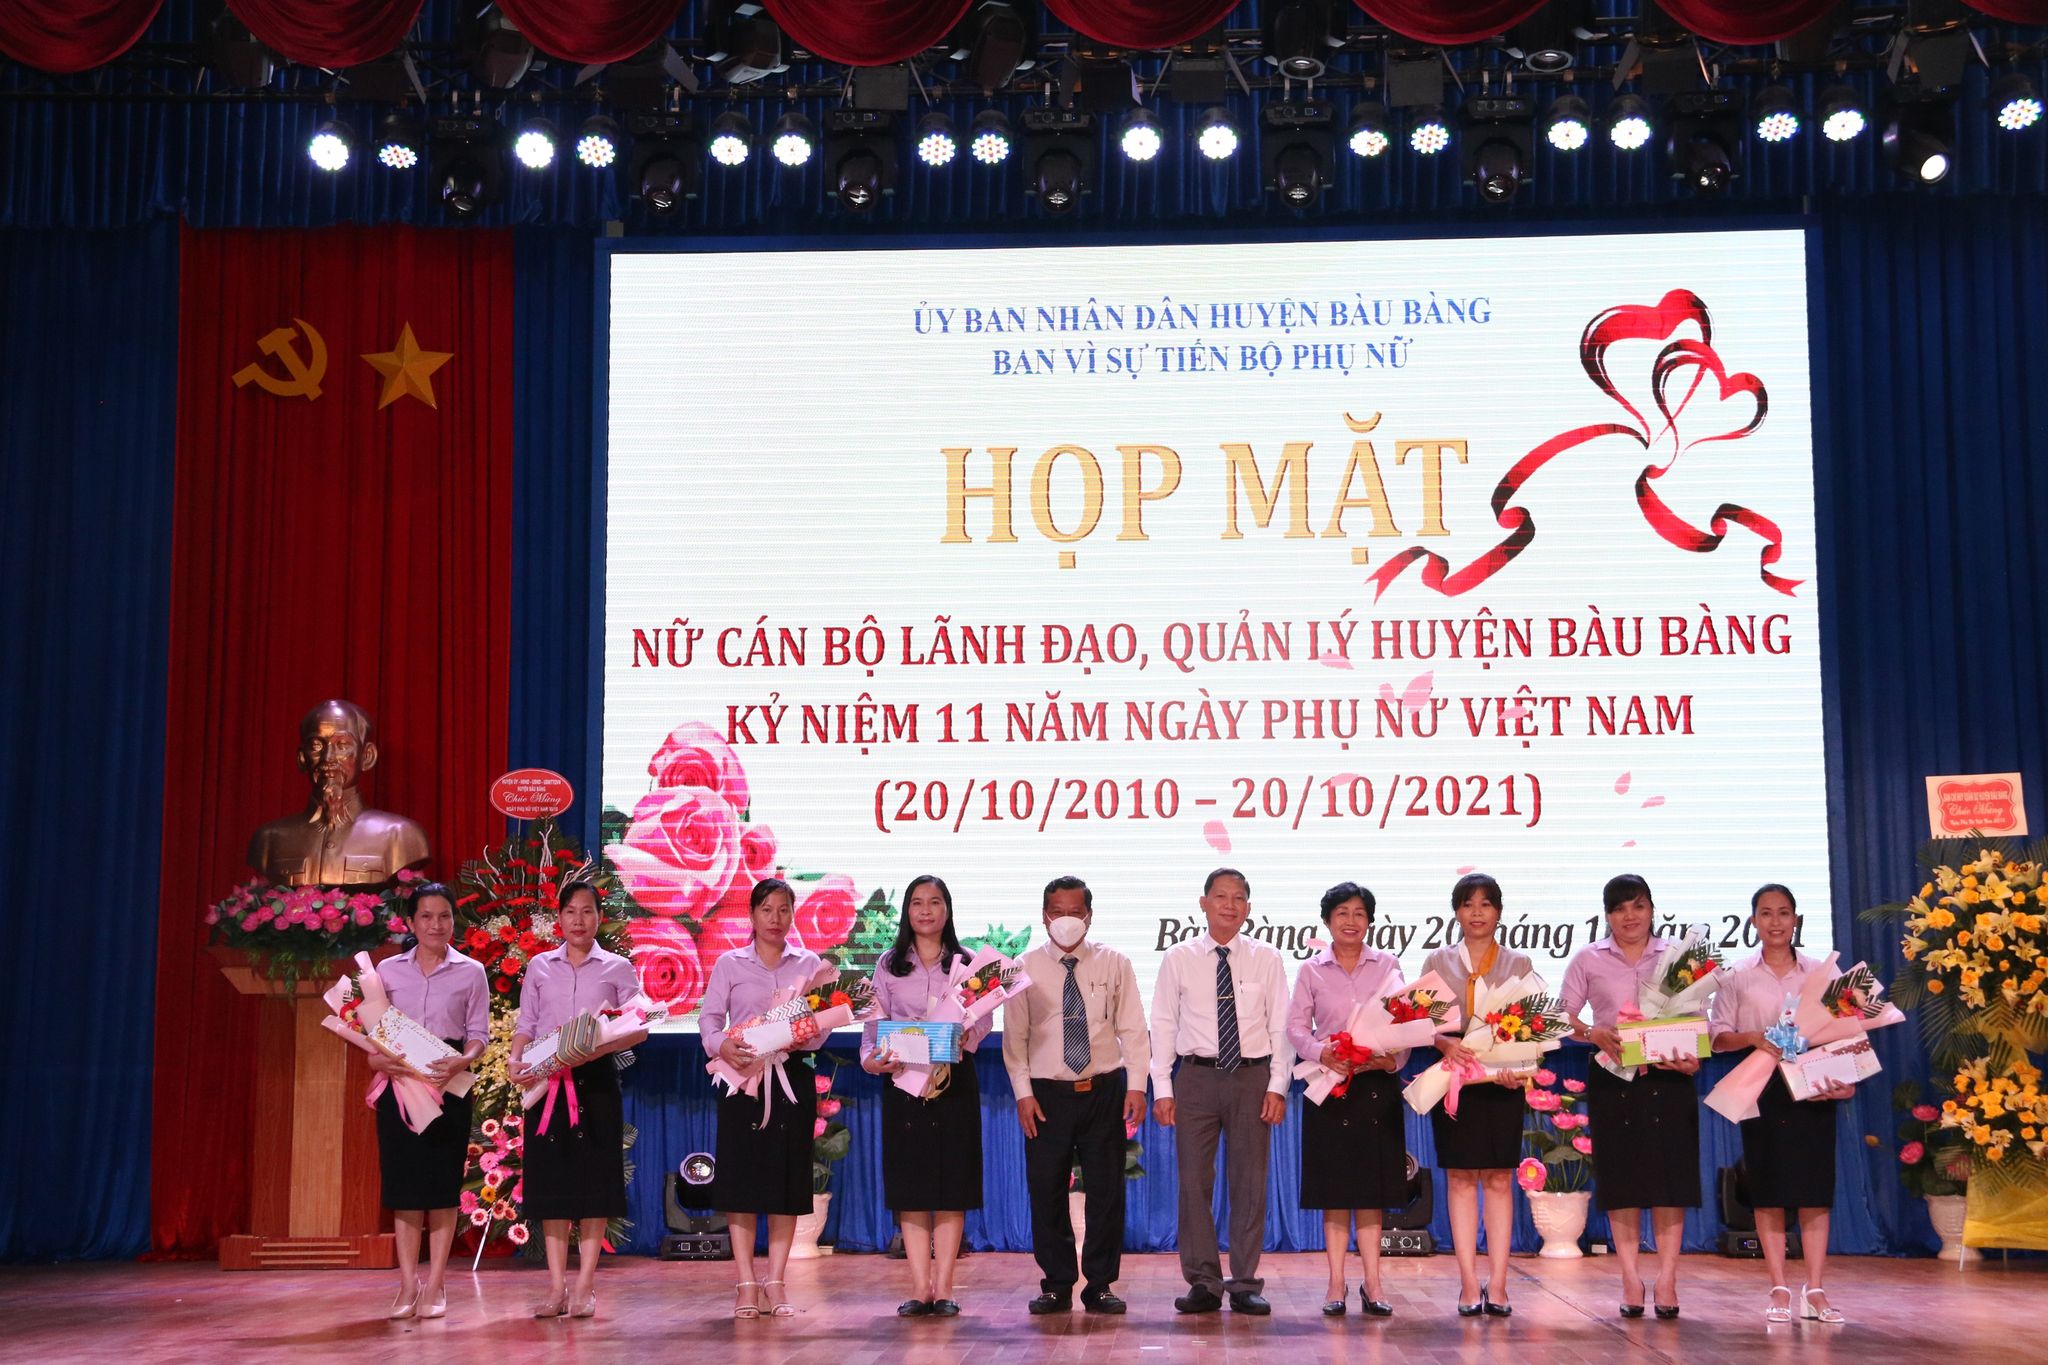 Huyện Bàu Bàng tổ chức họp mặt nữ lãnh đạo quản lý kỷ niệm 91 năm ngày thành lập Hội LHPN Việt Nam (20-10-1930-20-10-2021) và 11 năm ngày phụ nữ Việt Nam (20-10-2010-20-10-2021)